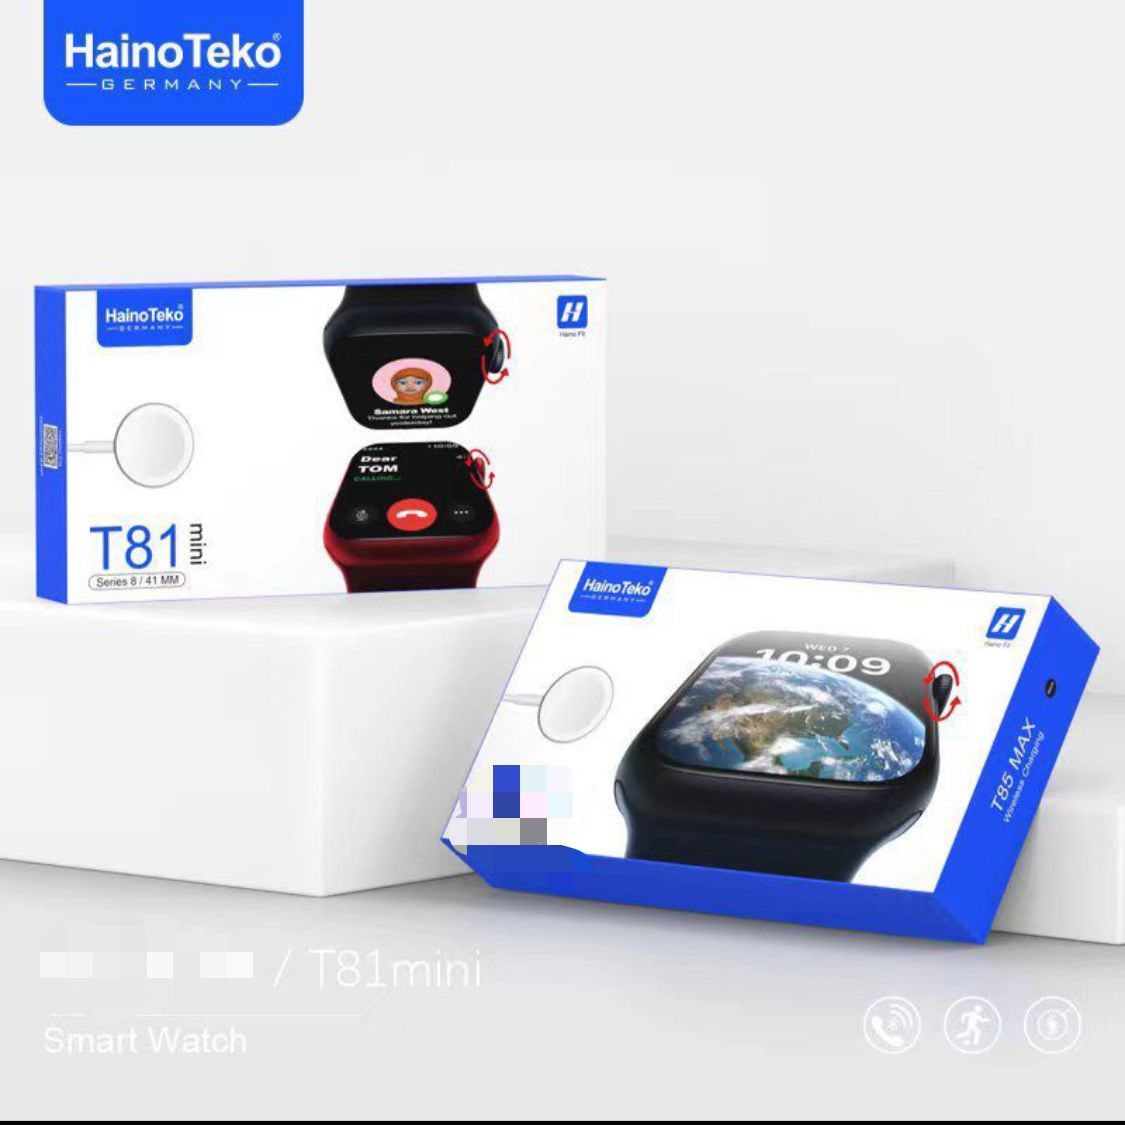 Haino Teko Germany T81 mini, 44mm Smart Watch | swswsibnbk